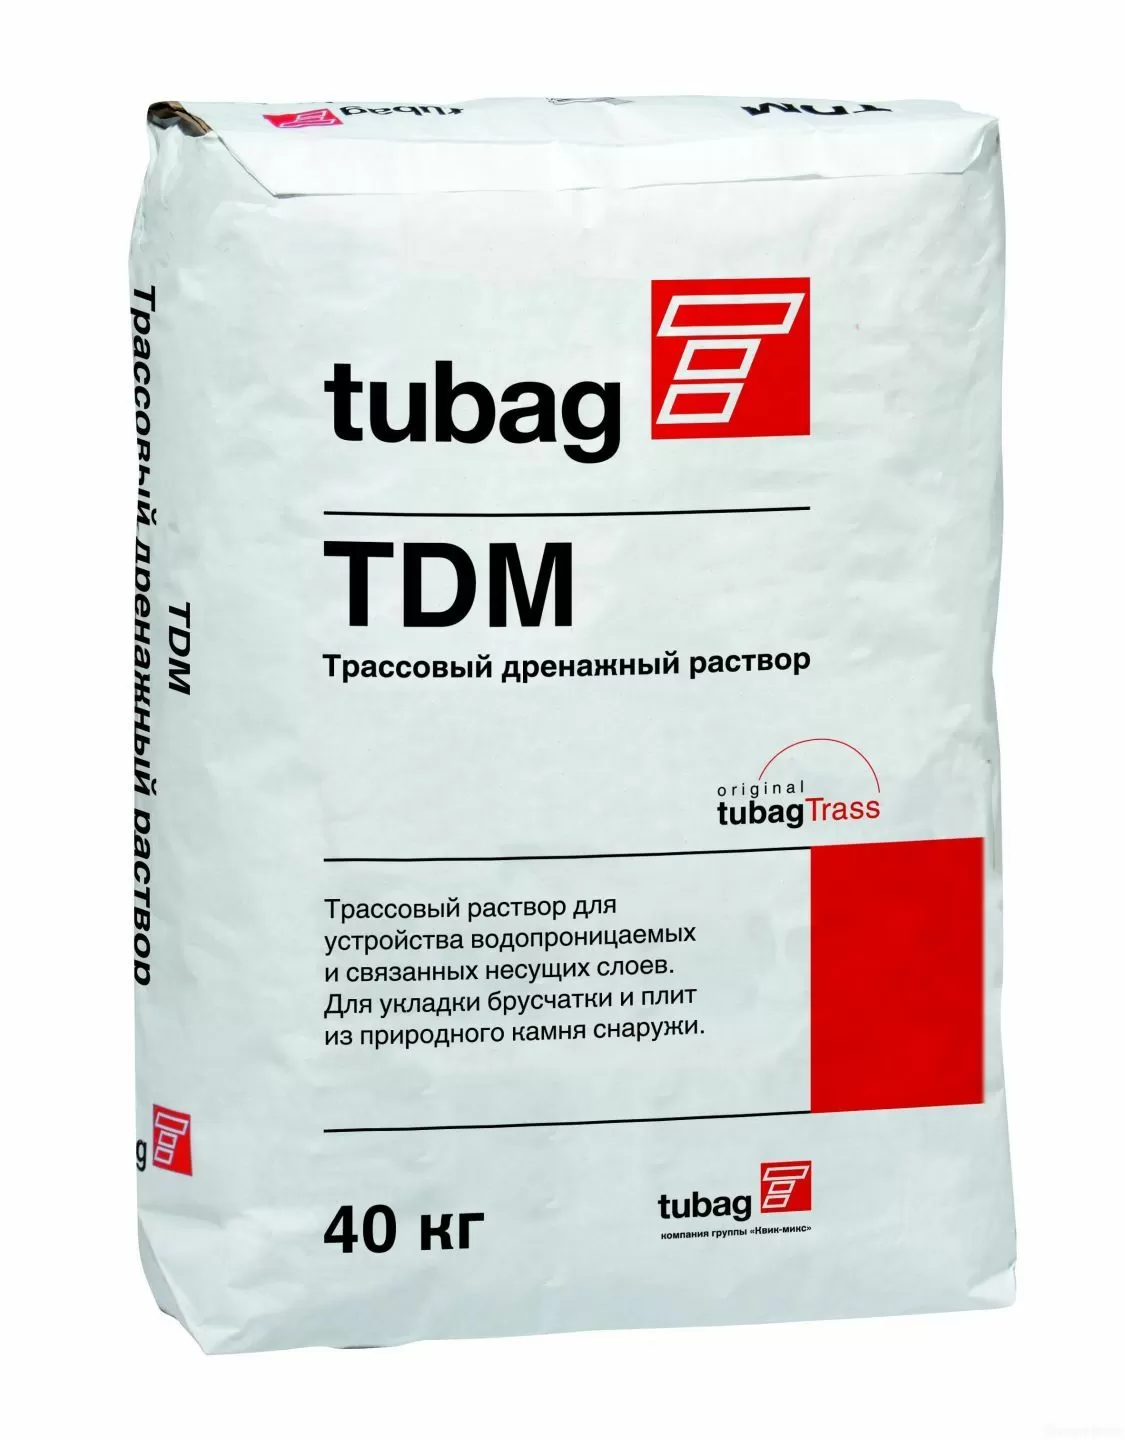 Трассовый дренажный раствор tubag TDM